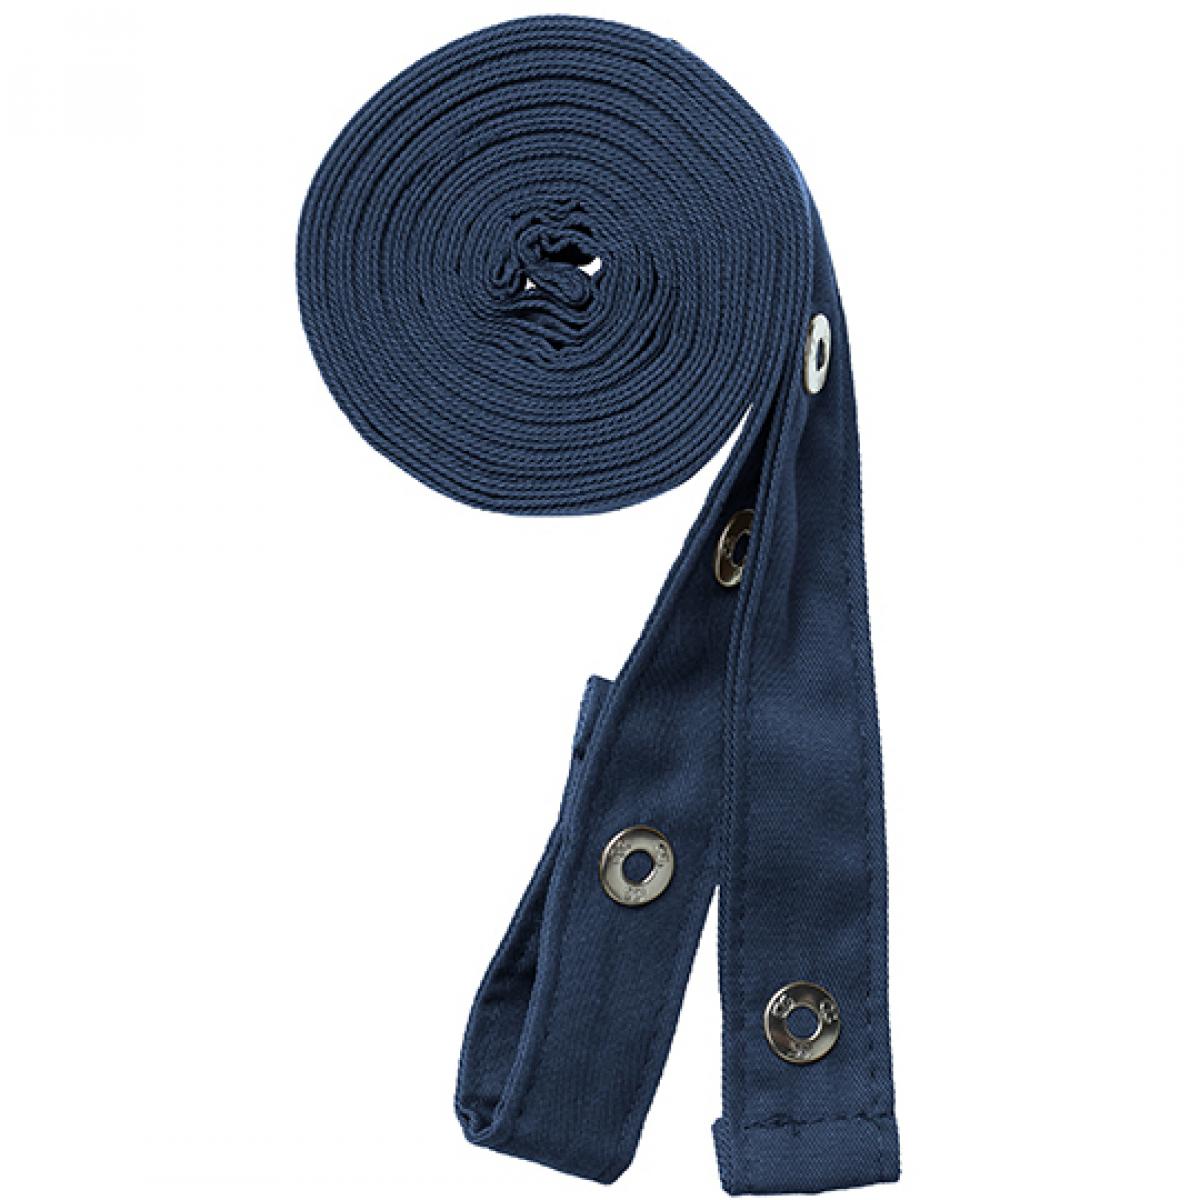 Hersteller: CG Workwear Herstellernummer: 42141 Artikelbezeichnung: Potenza X Classic Strap Set je 230 cm lang und 2,5 cm breit Farbe: Dark Blue